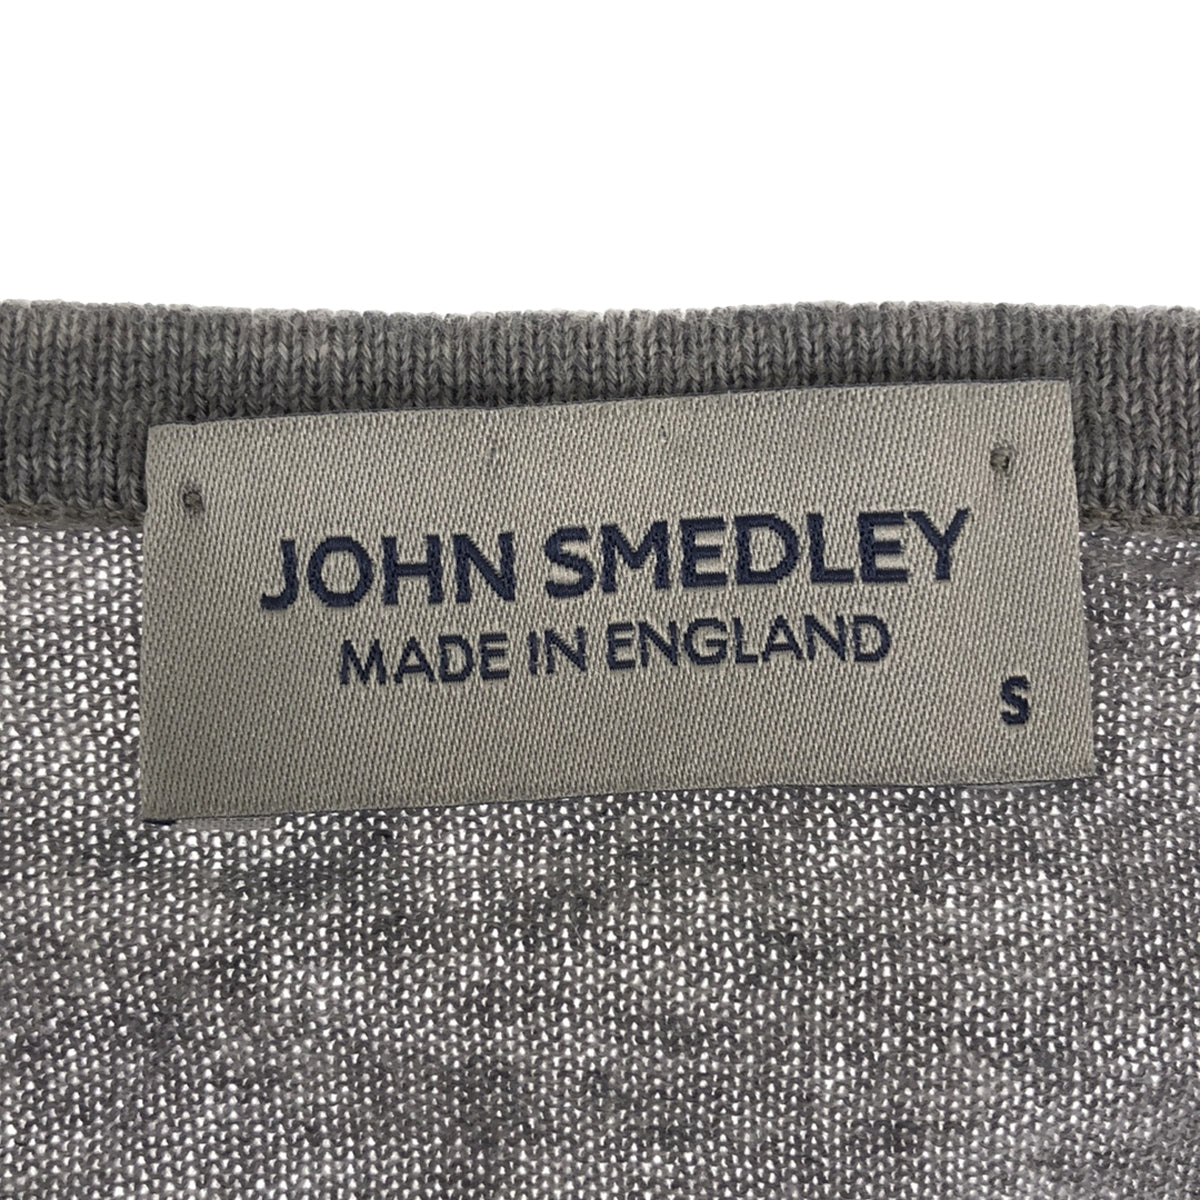 JOHN SMEDLEY / ジョンスメドレー | シーアイランドコットン クルー